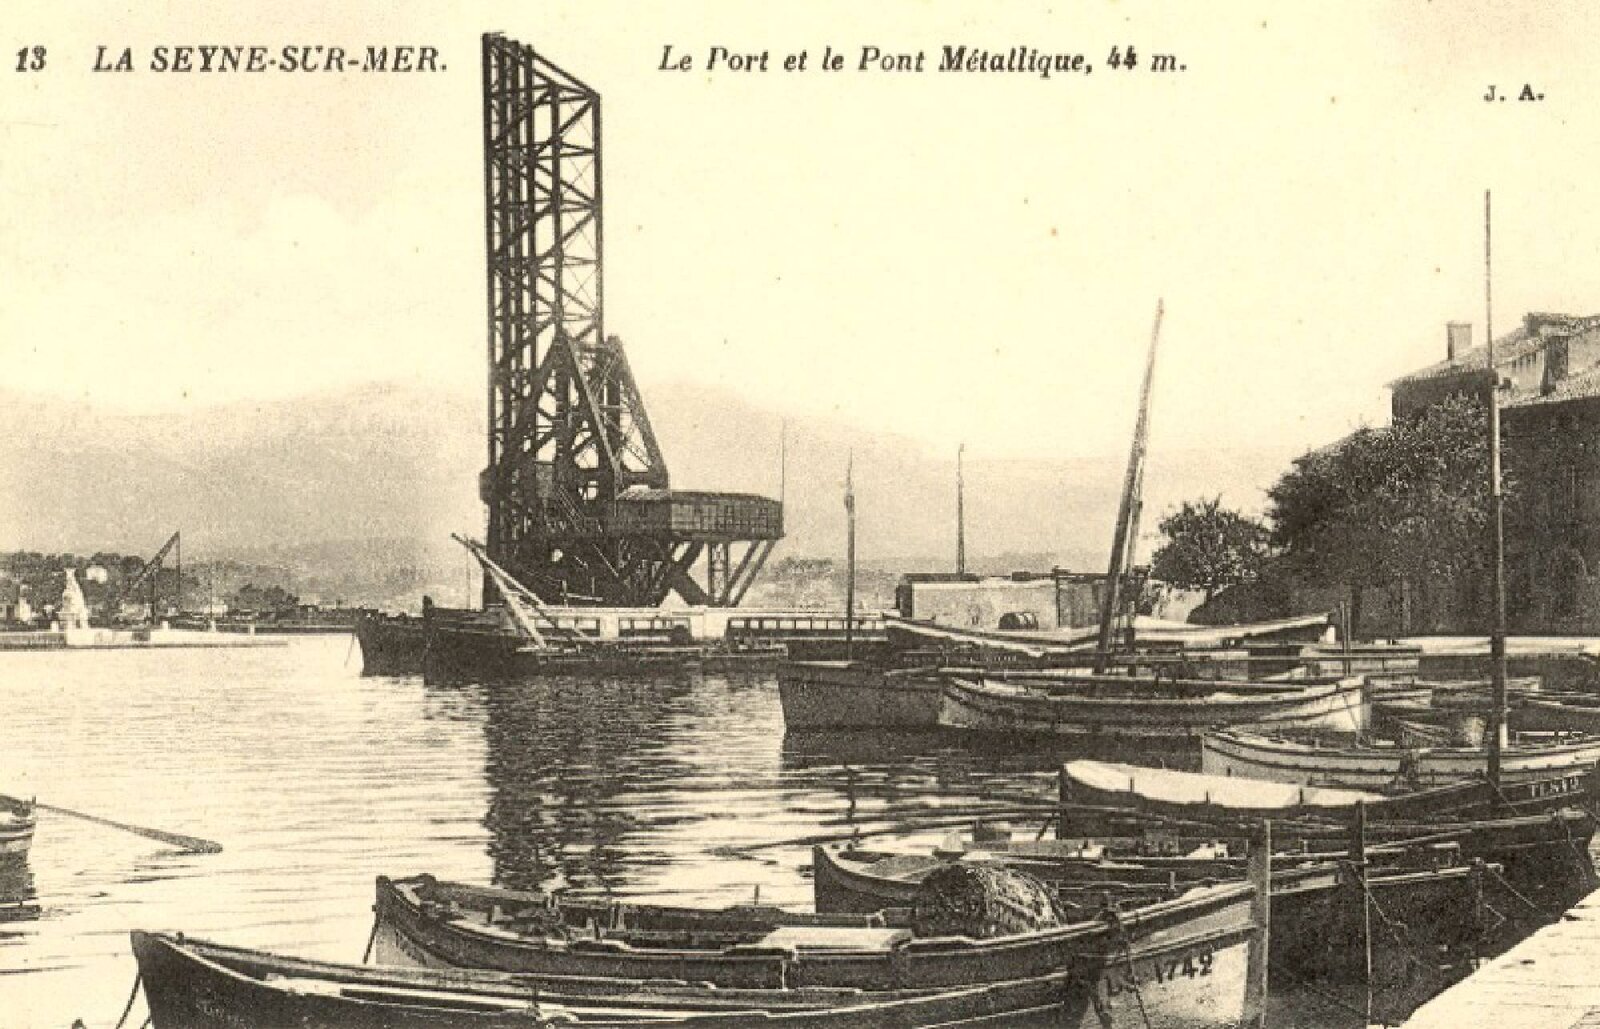 La Seyne-sur-Mer (141).jpg